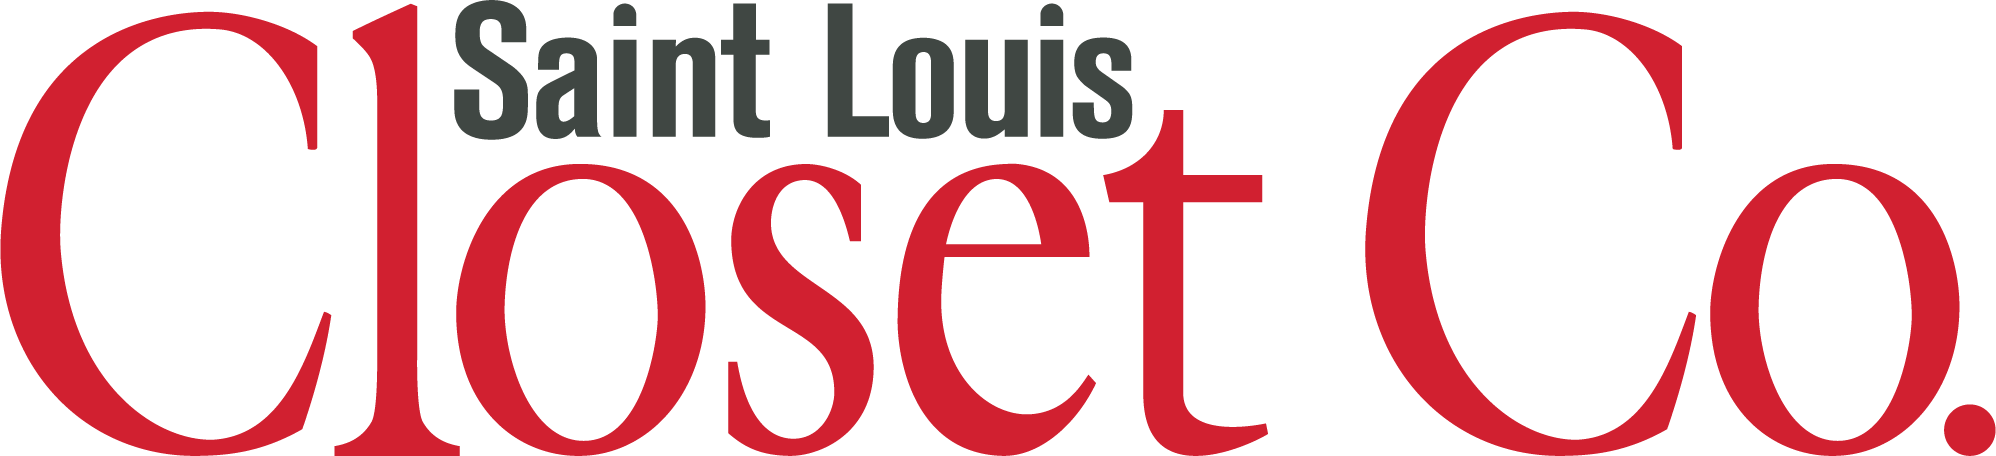 Saint Louis Closet Co. Logo